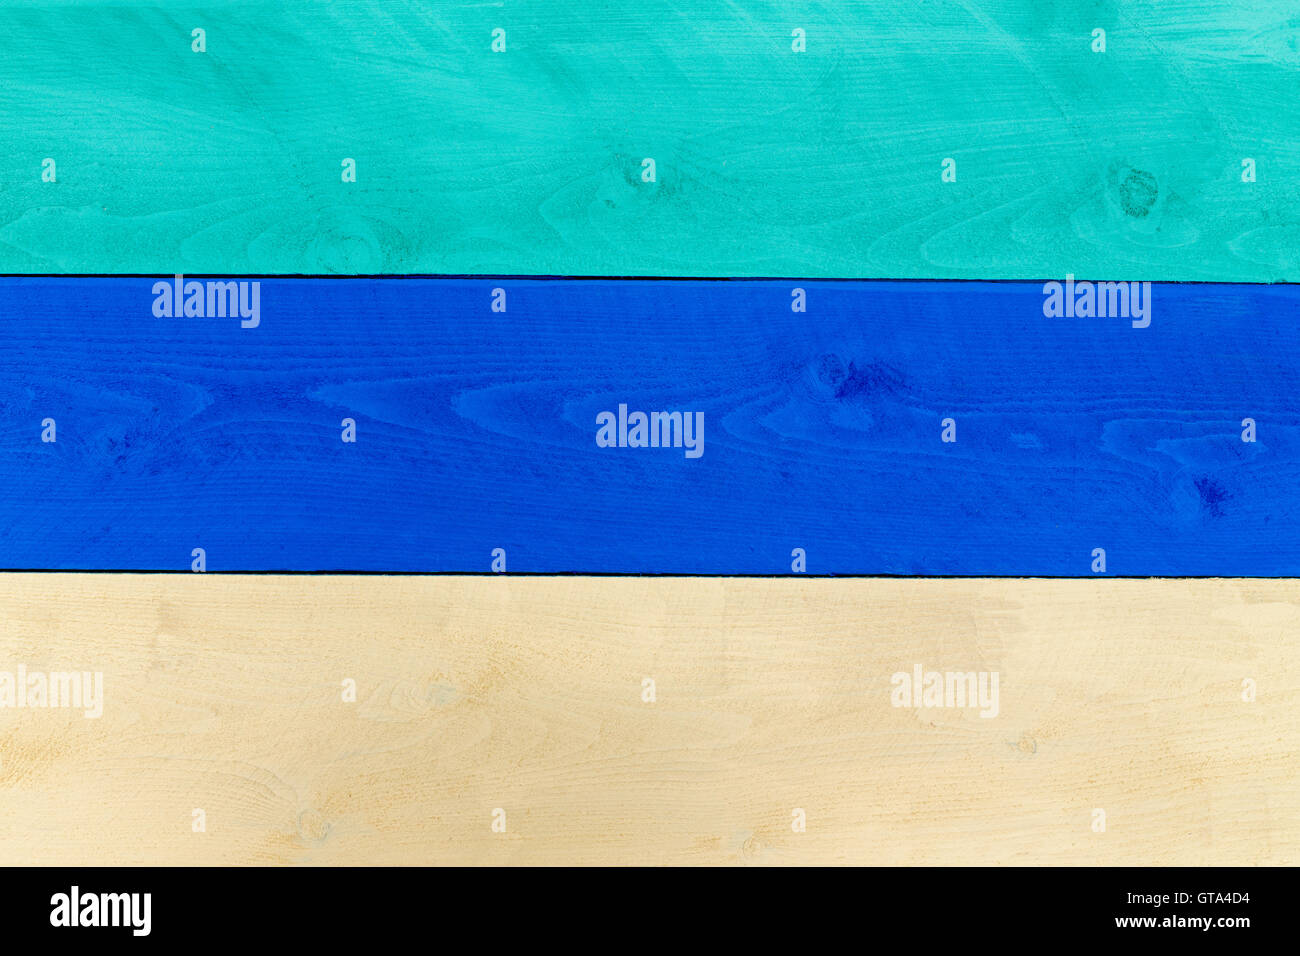 Historique composé de planches en bois en vert, bleu et crème et placées côte à côte Banque D'Images